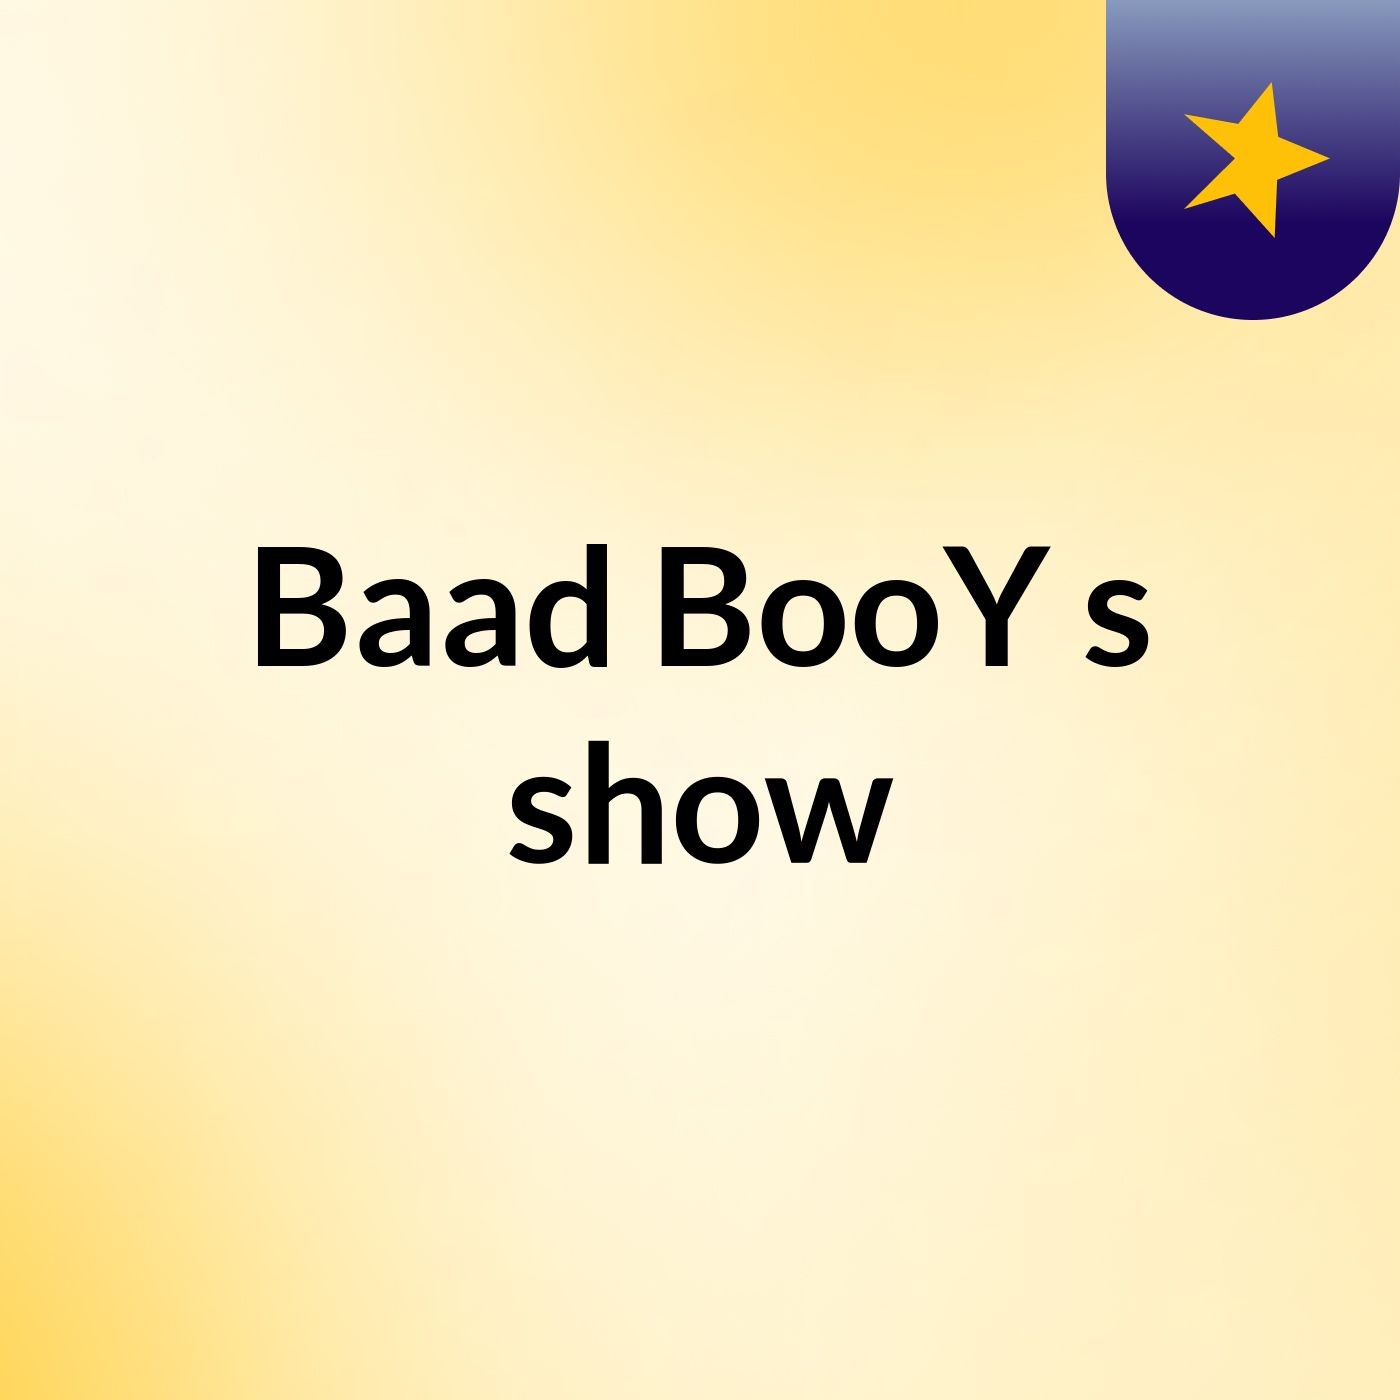 Baad BooY's show